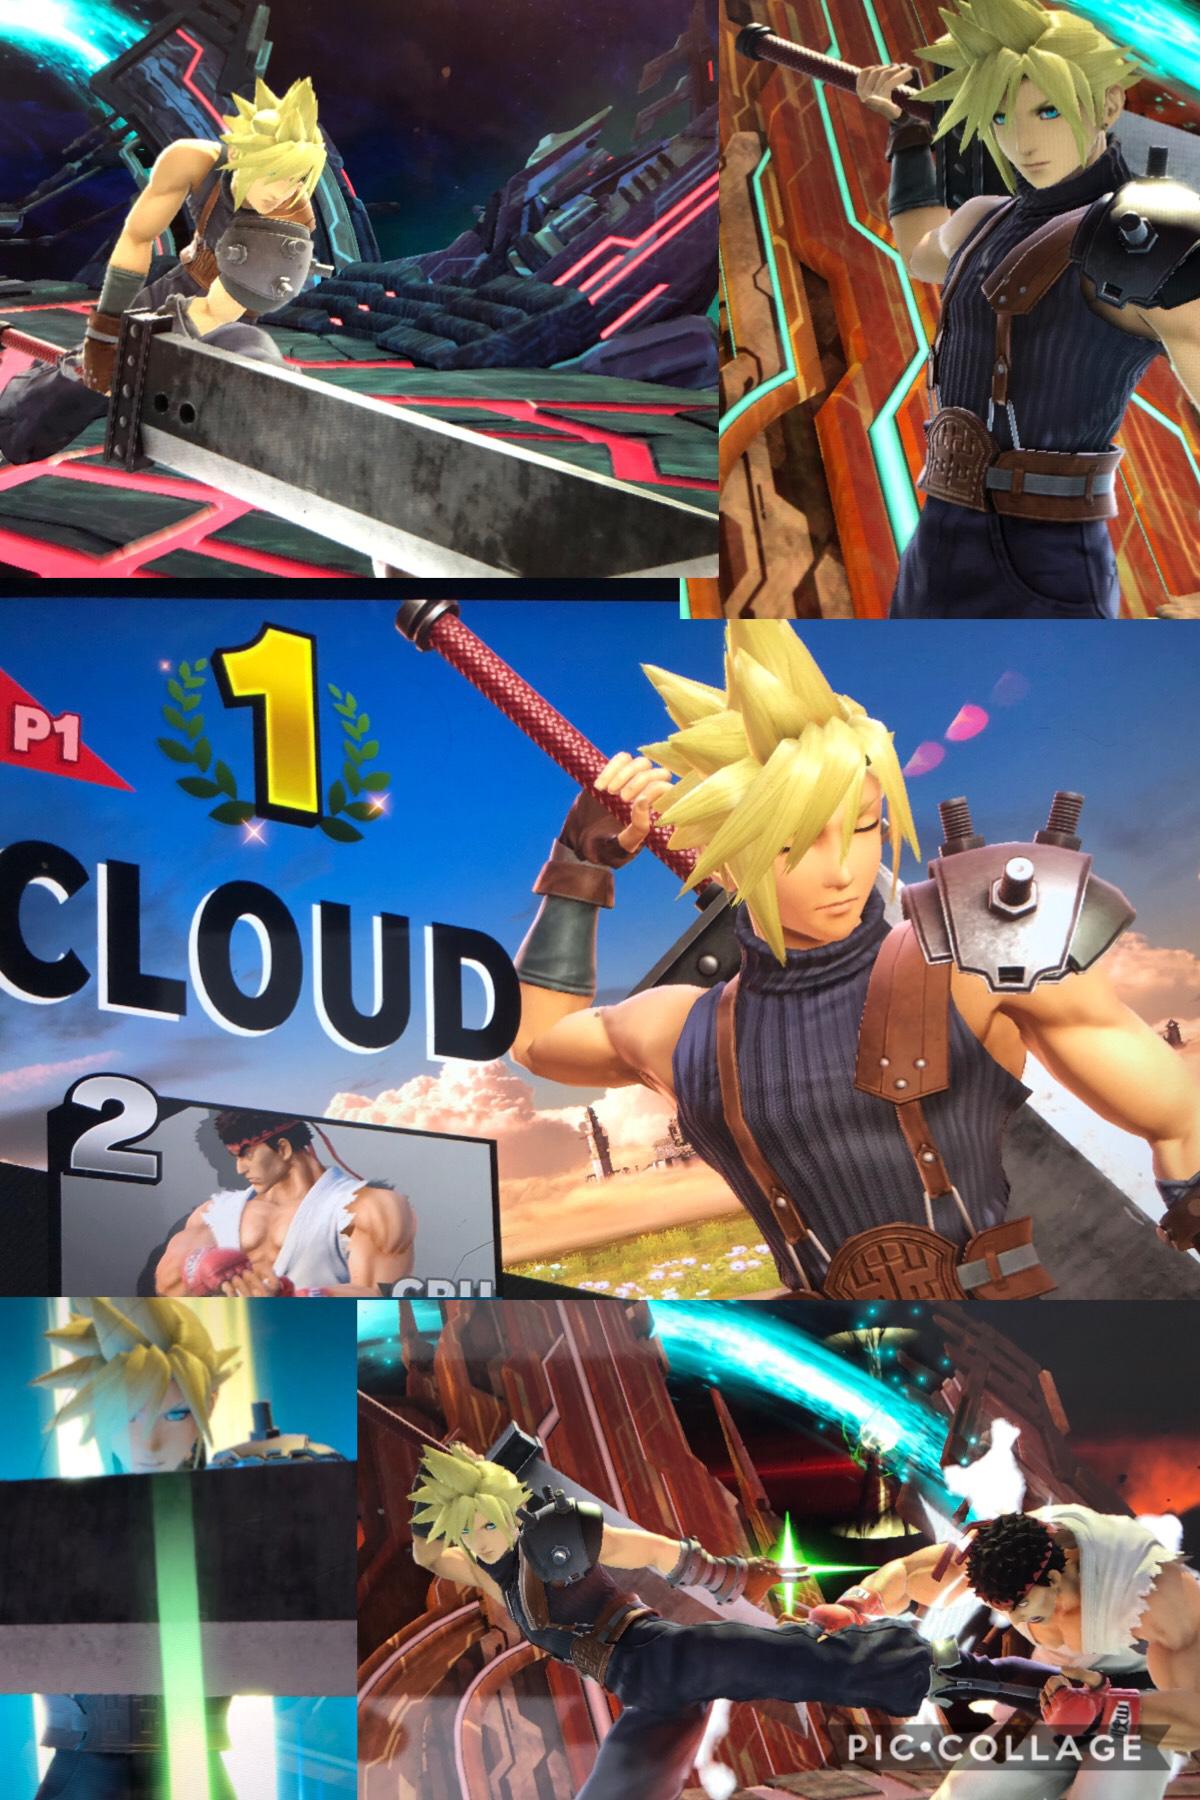 Cloud : My favorite super Smash Bros character